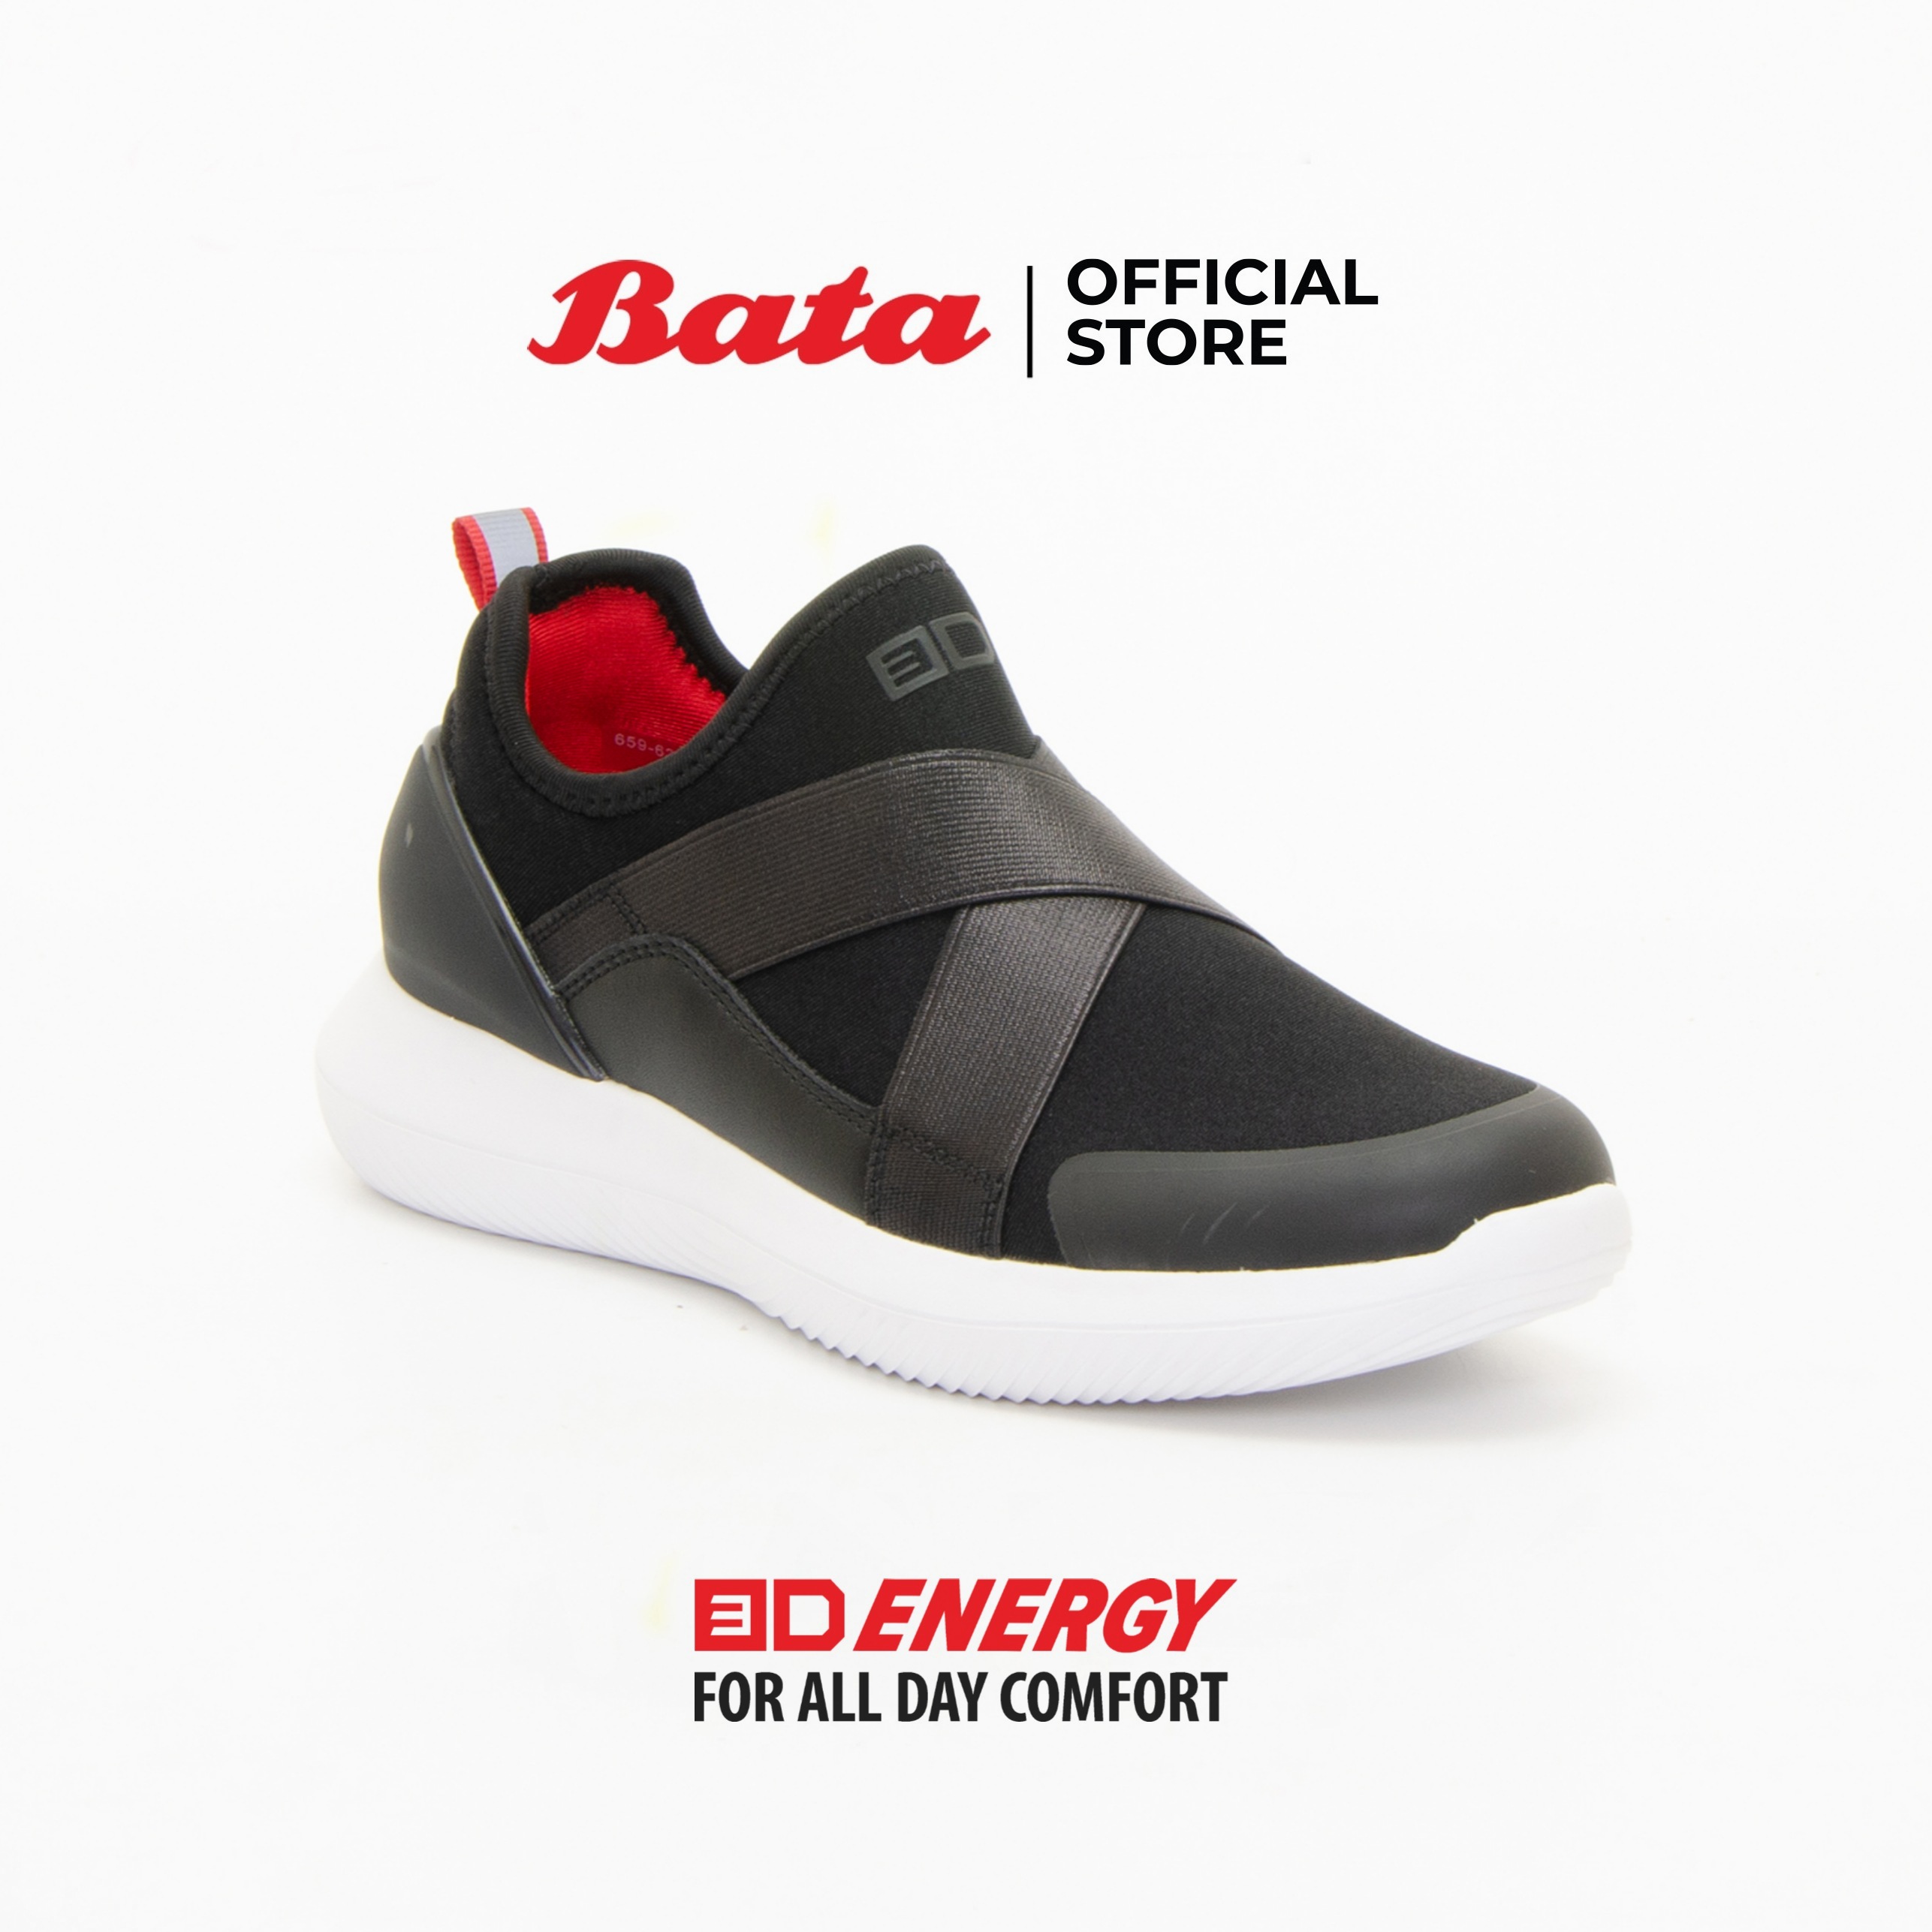 Bata Women's 3D Energy Slip-on Sneakers รองเท้าผ้าใบกีฬาสำหรับผู้หญิง รุ่น 3D Energy สีดำ 6596365